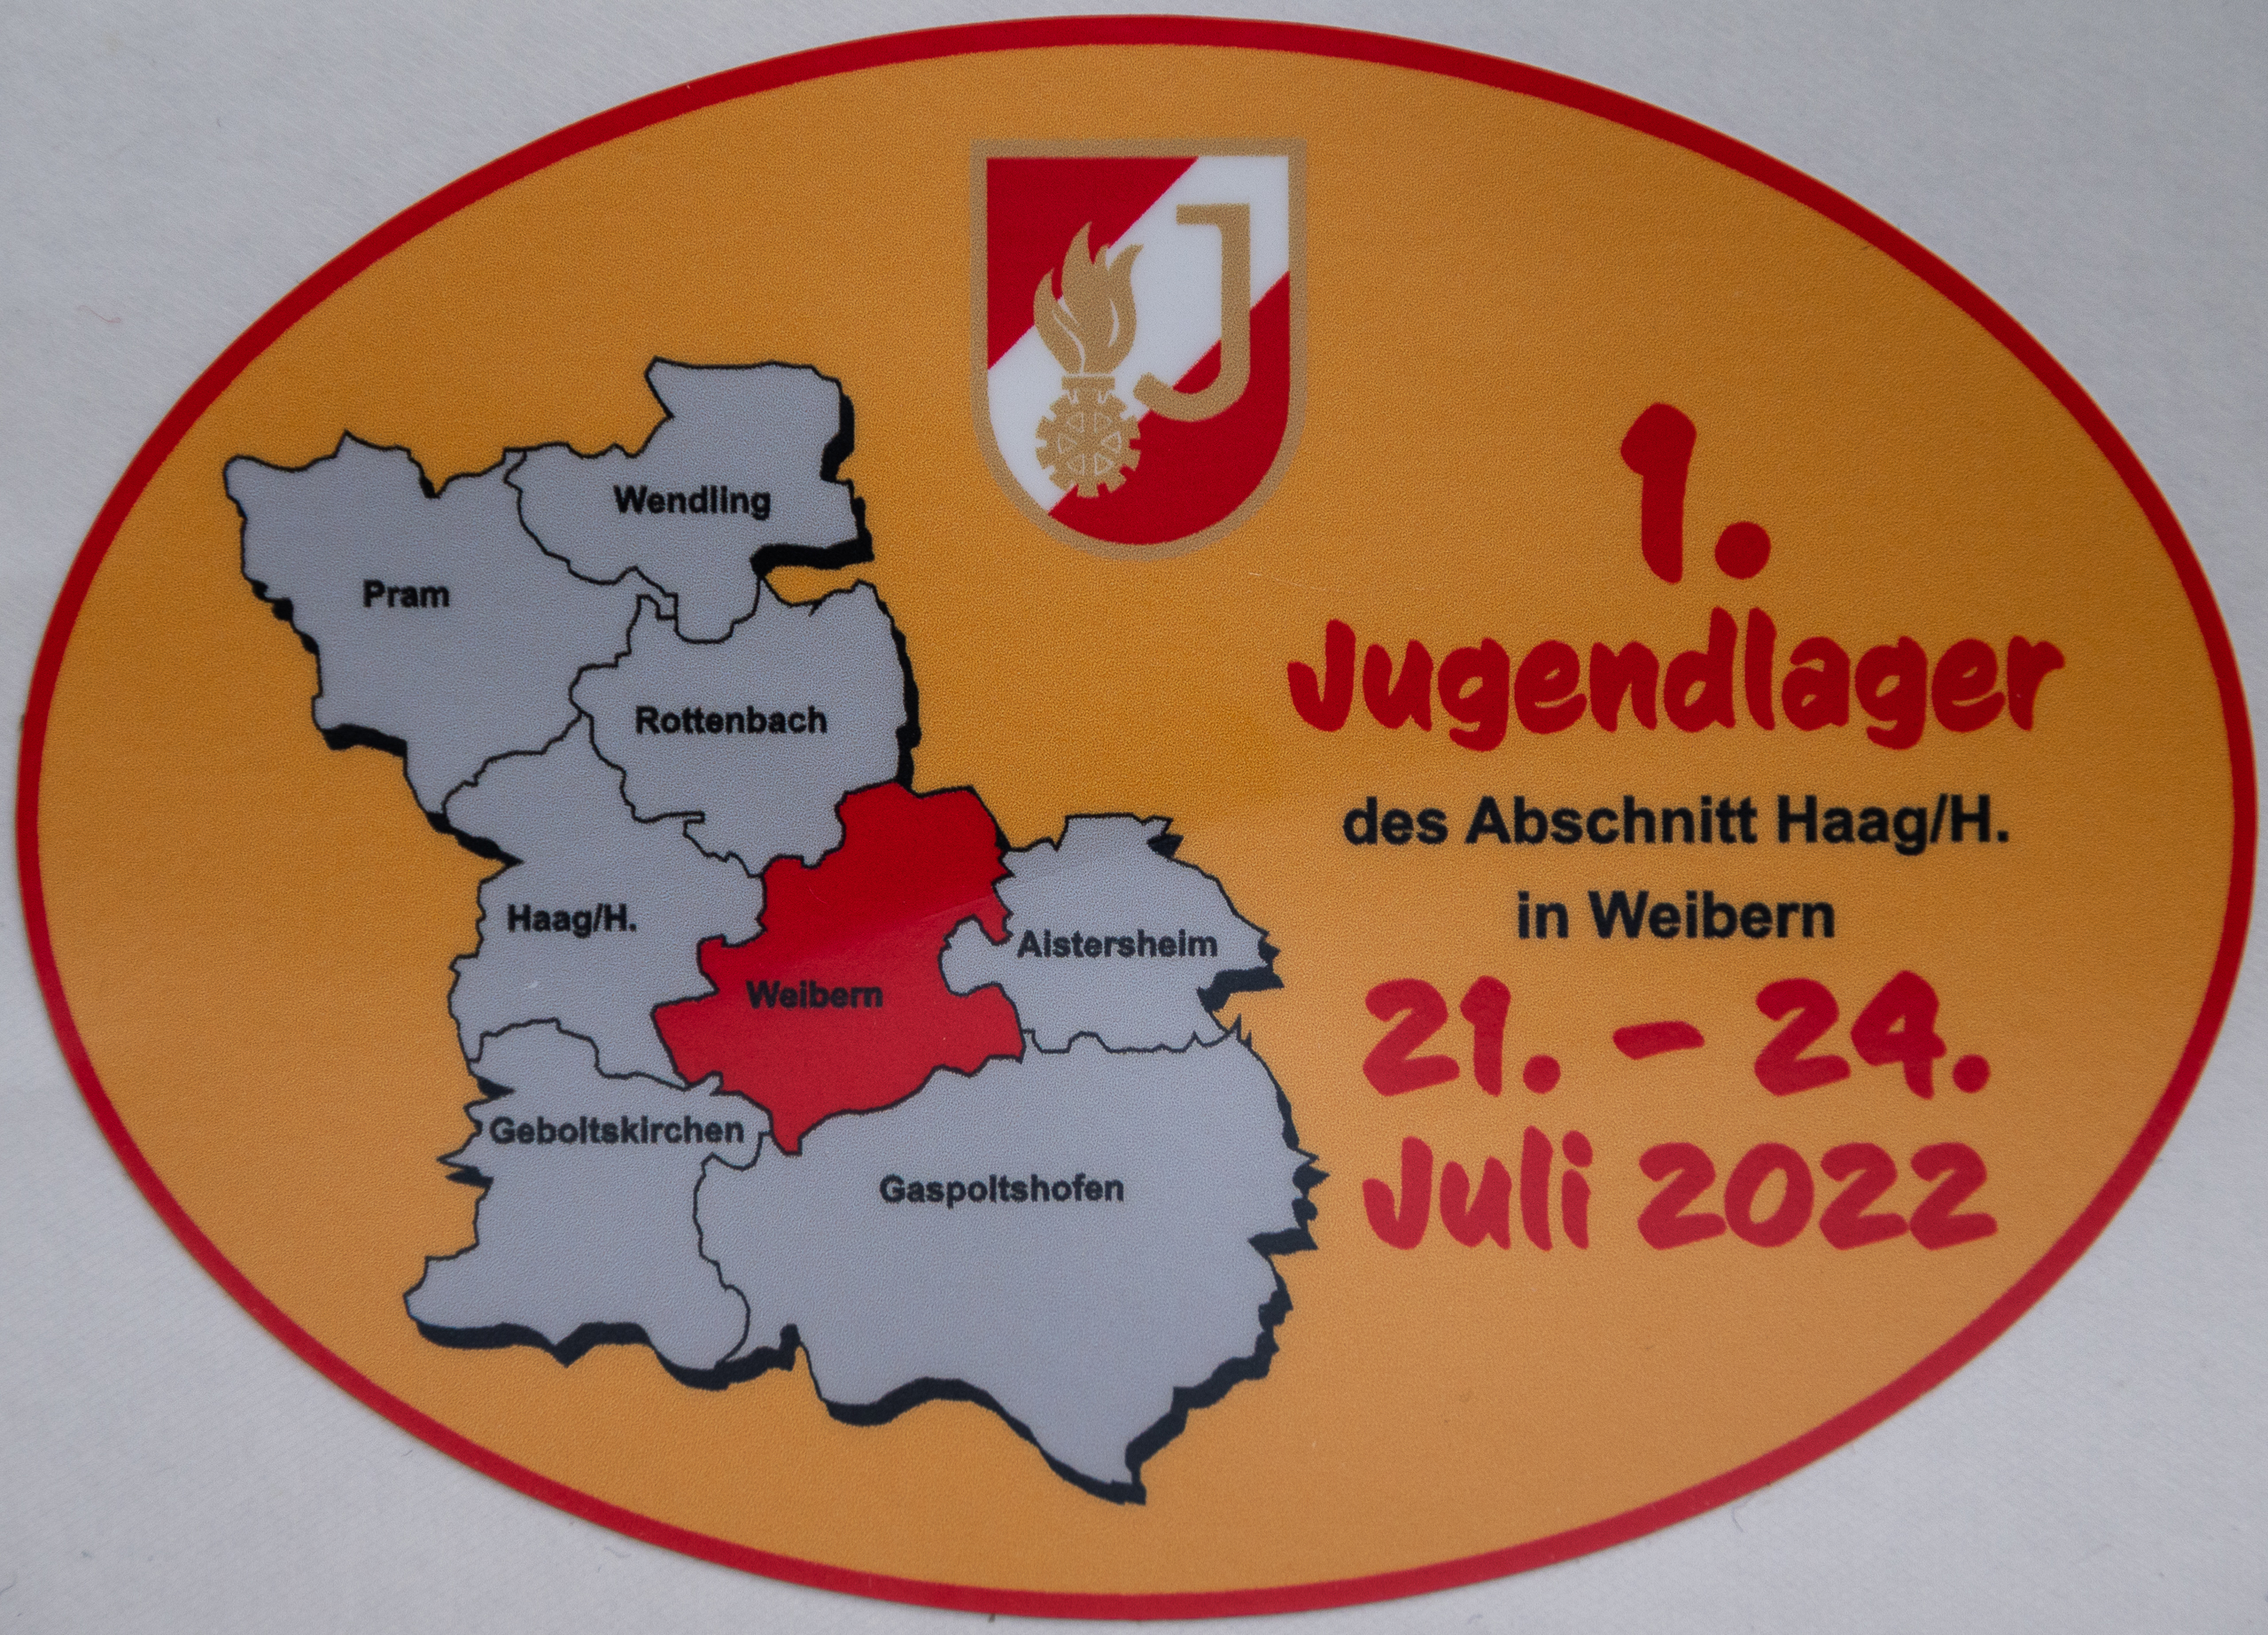 Abschnitts-Jugendlager 2022 in Weibern